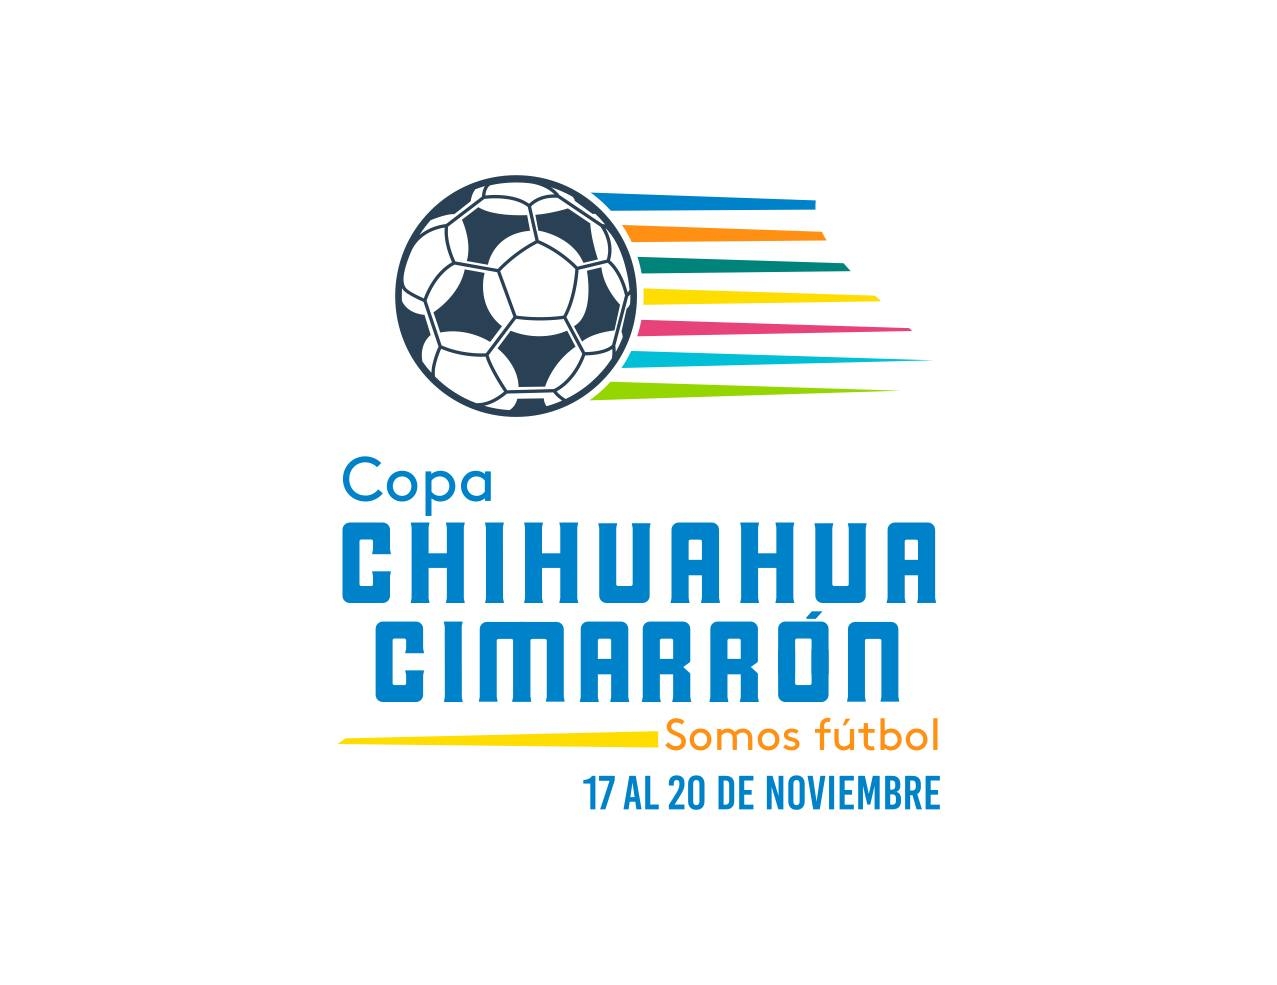 Copa Chihuahua Cimarron